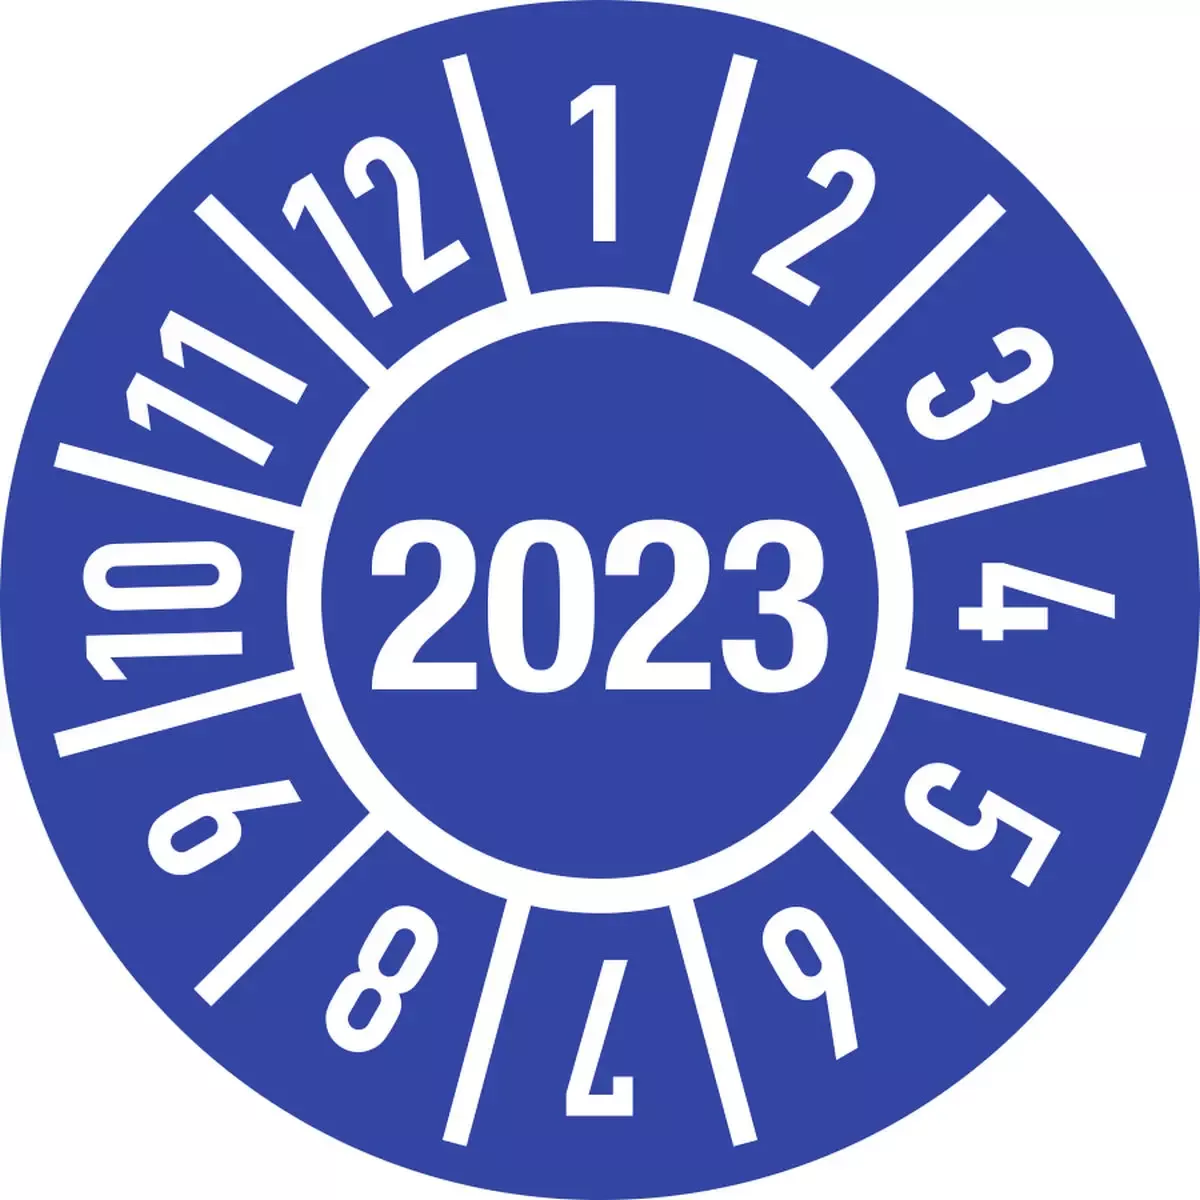 Hinweisschilder Prüfplakette Jahr 2023 mit Monaten, Folie, Ø 15 mm, 10 Stück Bogen für Warnen und hinweisen